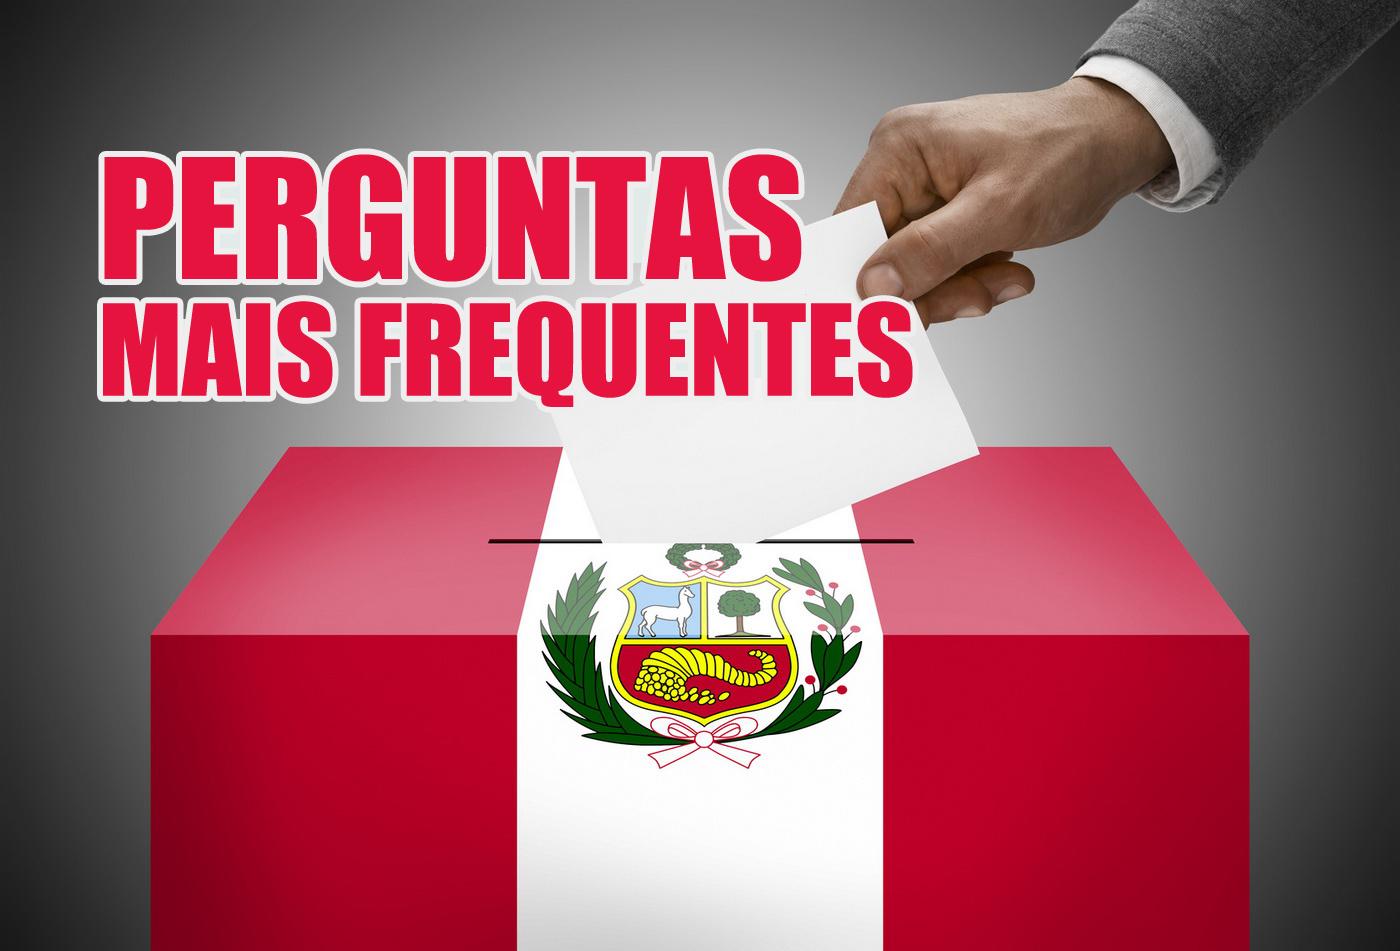 Perguntas mais frequentes - Eleições Congressuais Peru 2020 em Brasil